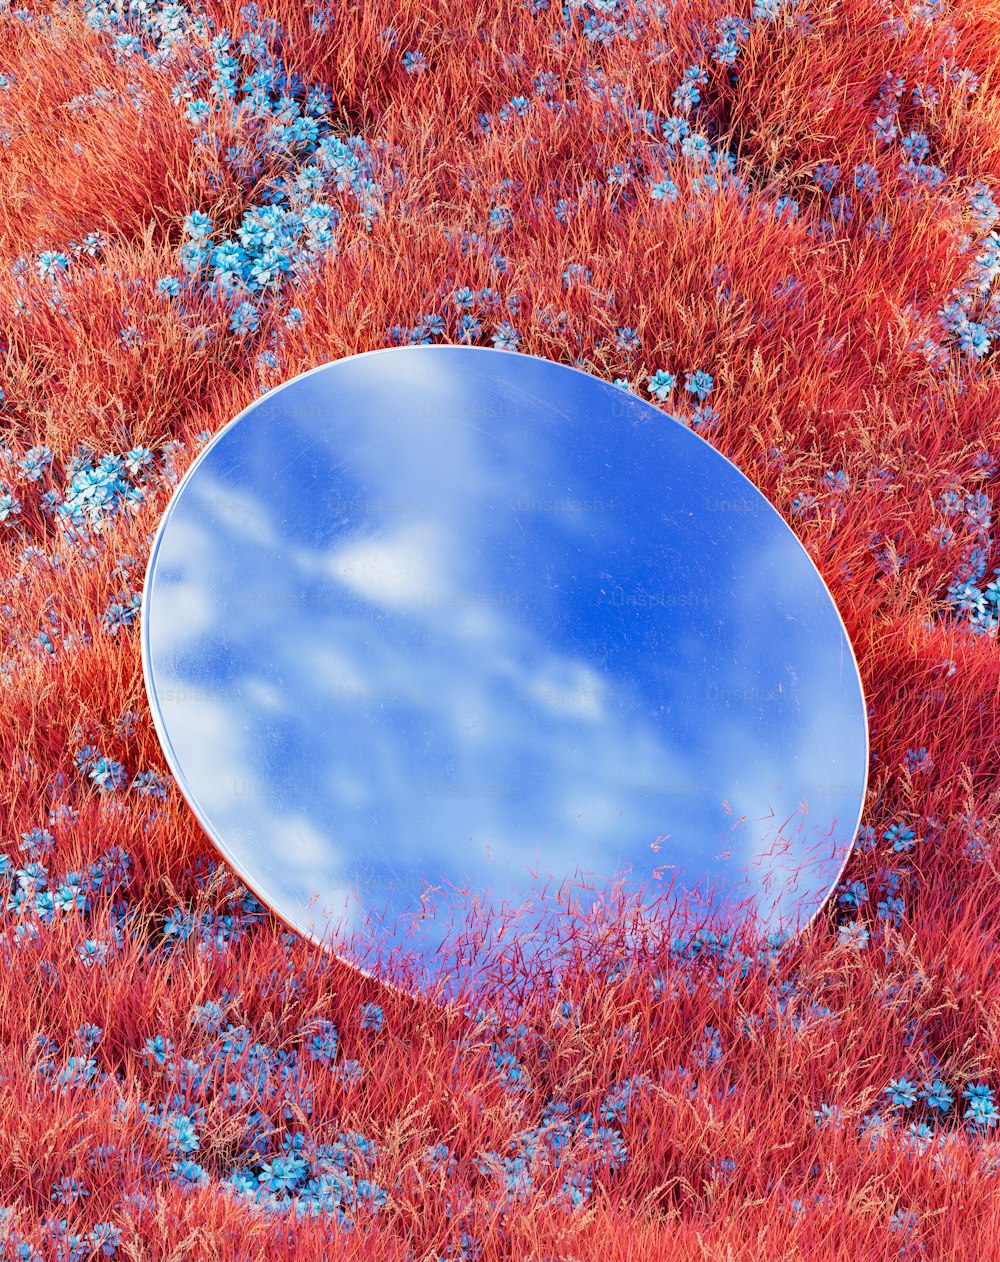 ein runder Spiegel, der auf einem grasbewachsenen Feld sitzt